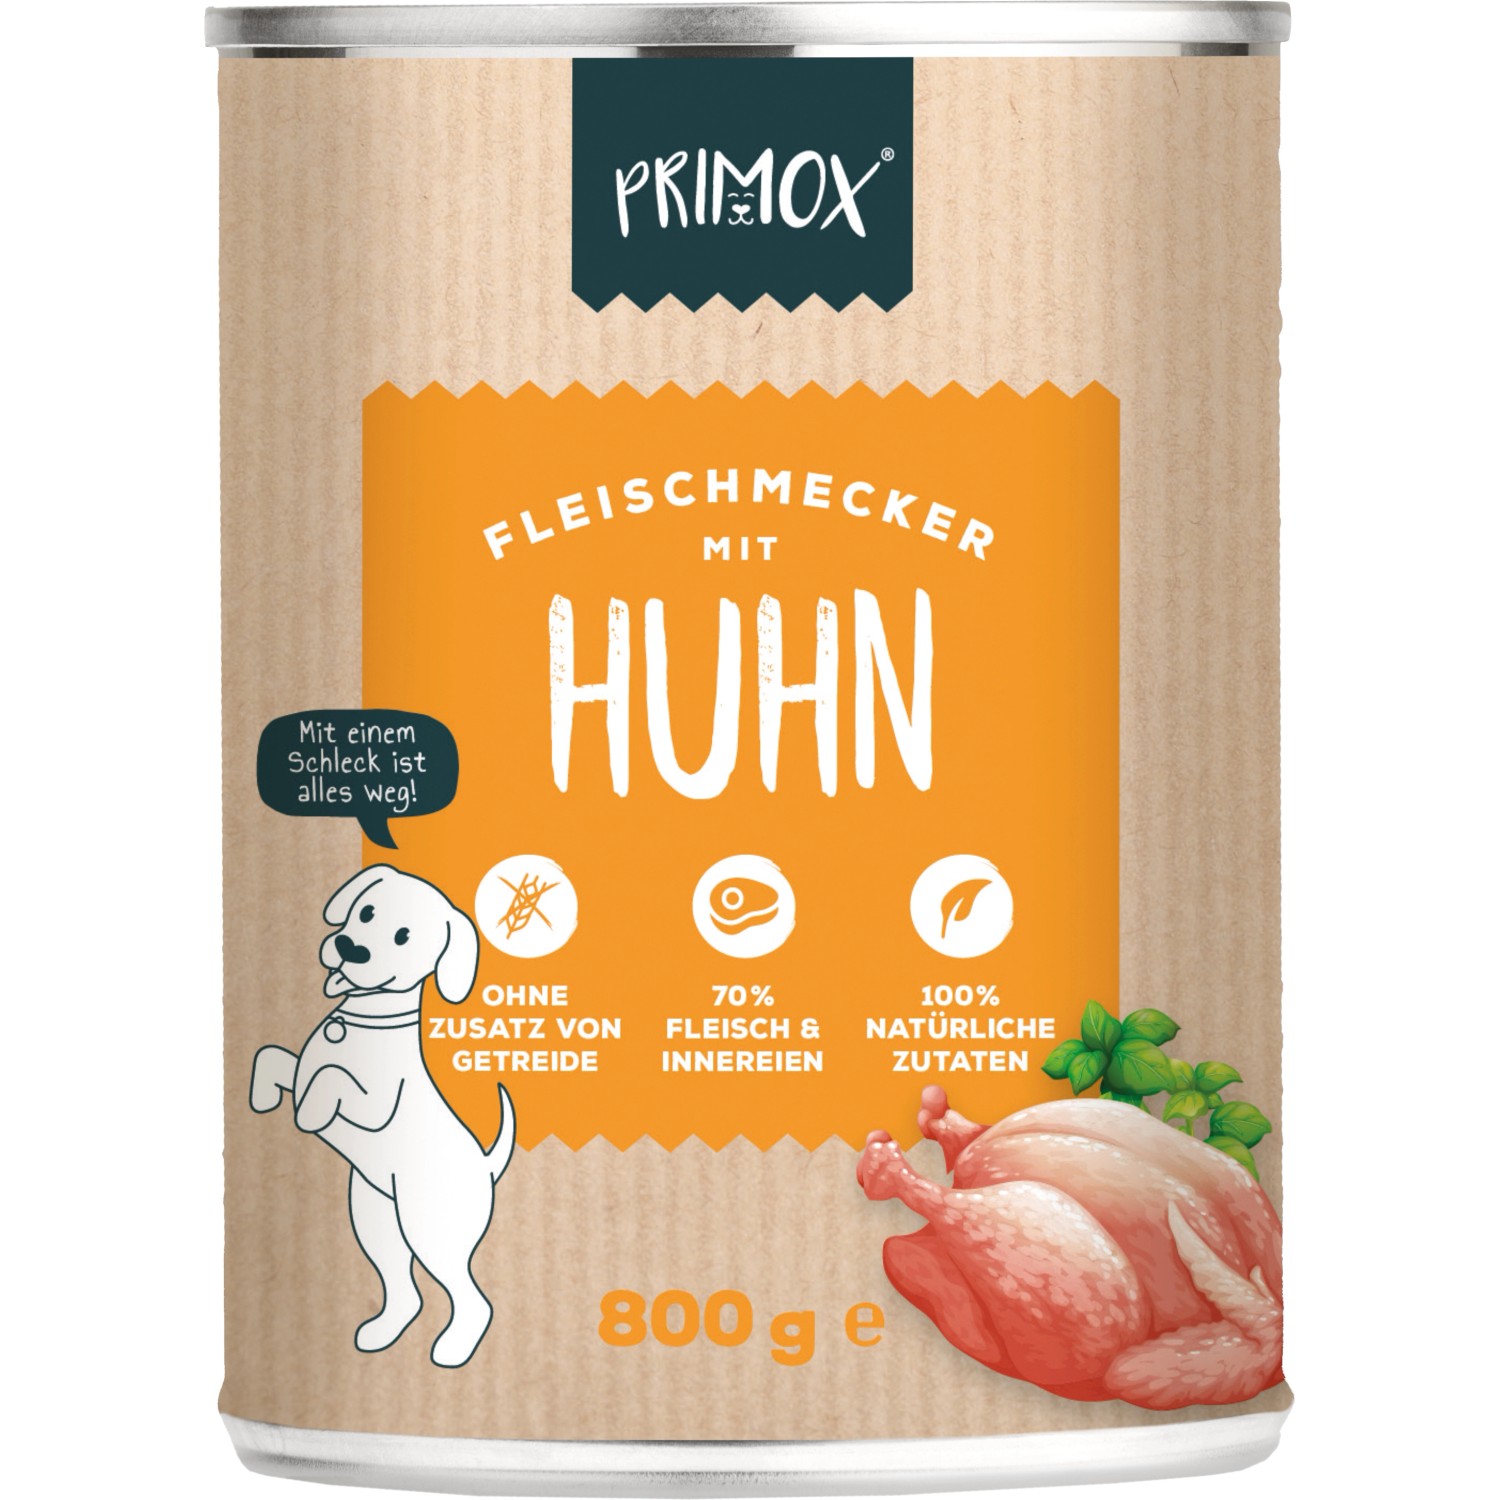 Primox Fleischmecker Huhn 800 g